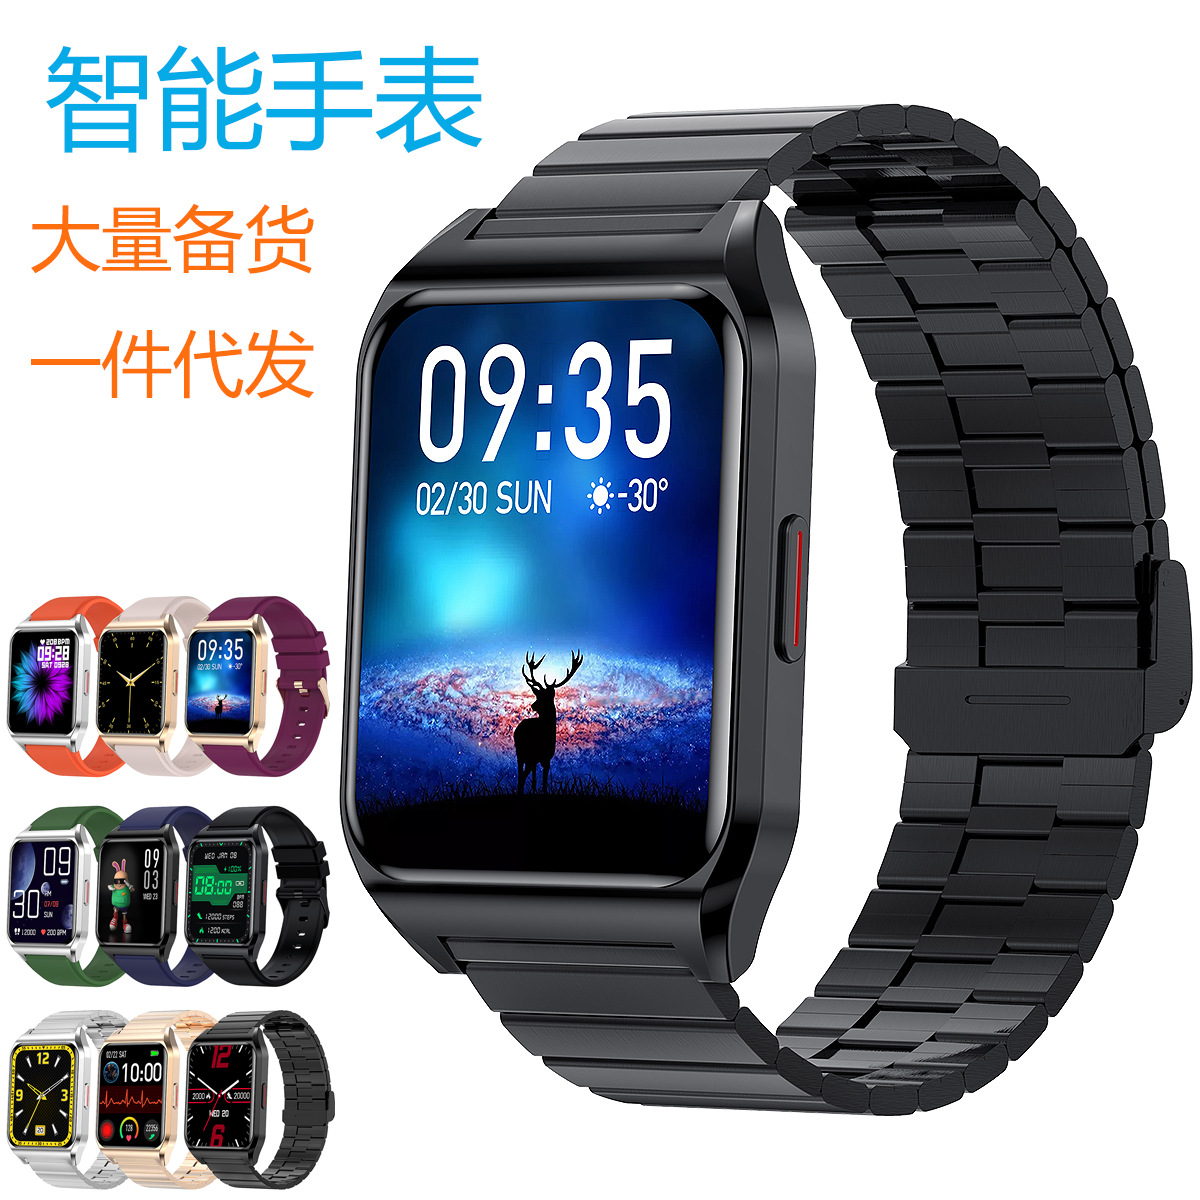 深圳厂家智能手表手环 定位防水体温心率通话 安卓智能运动手錶详情图2